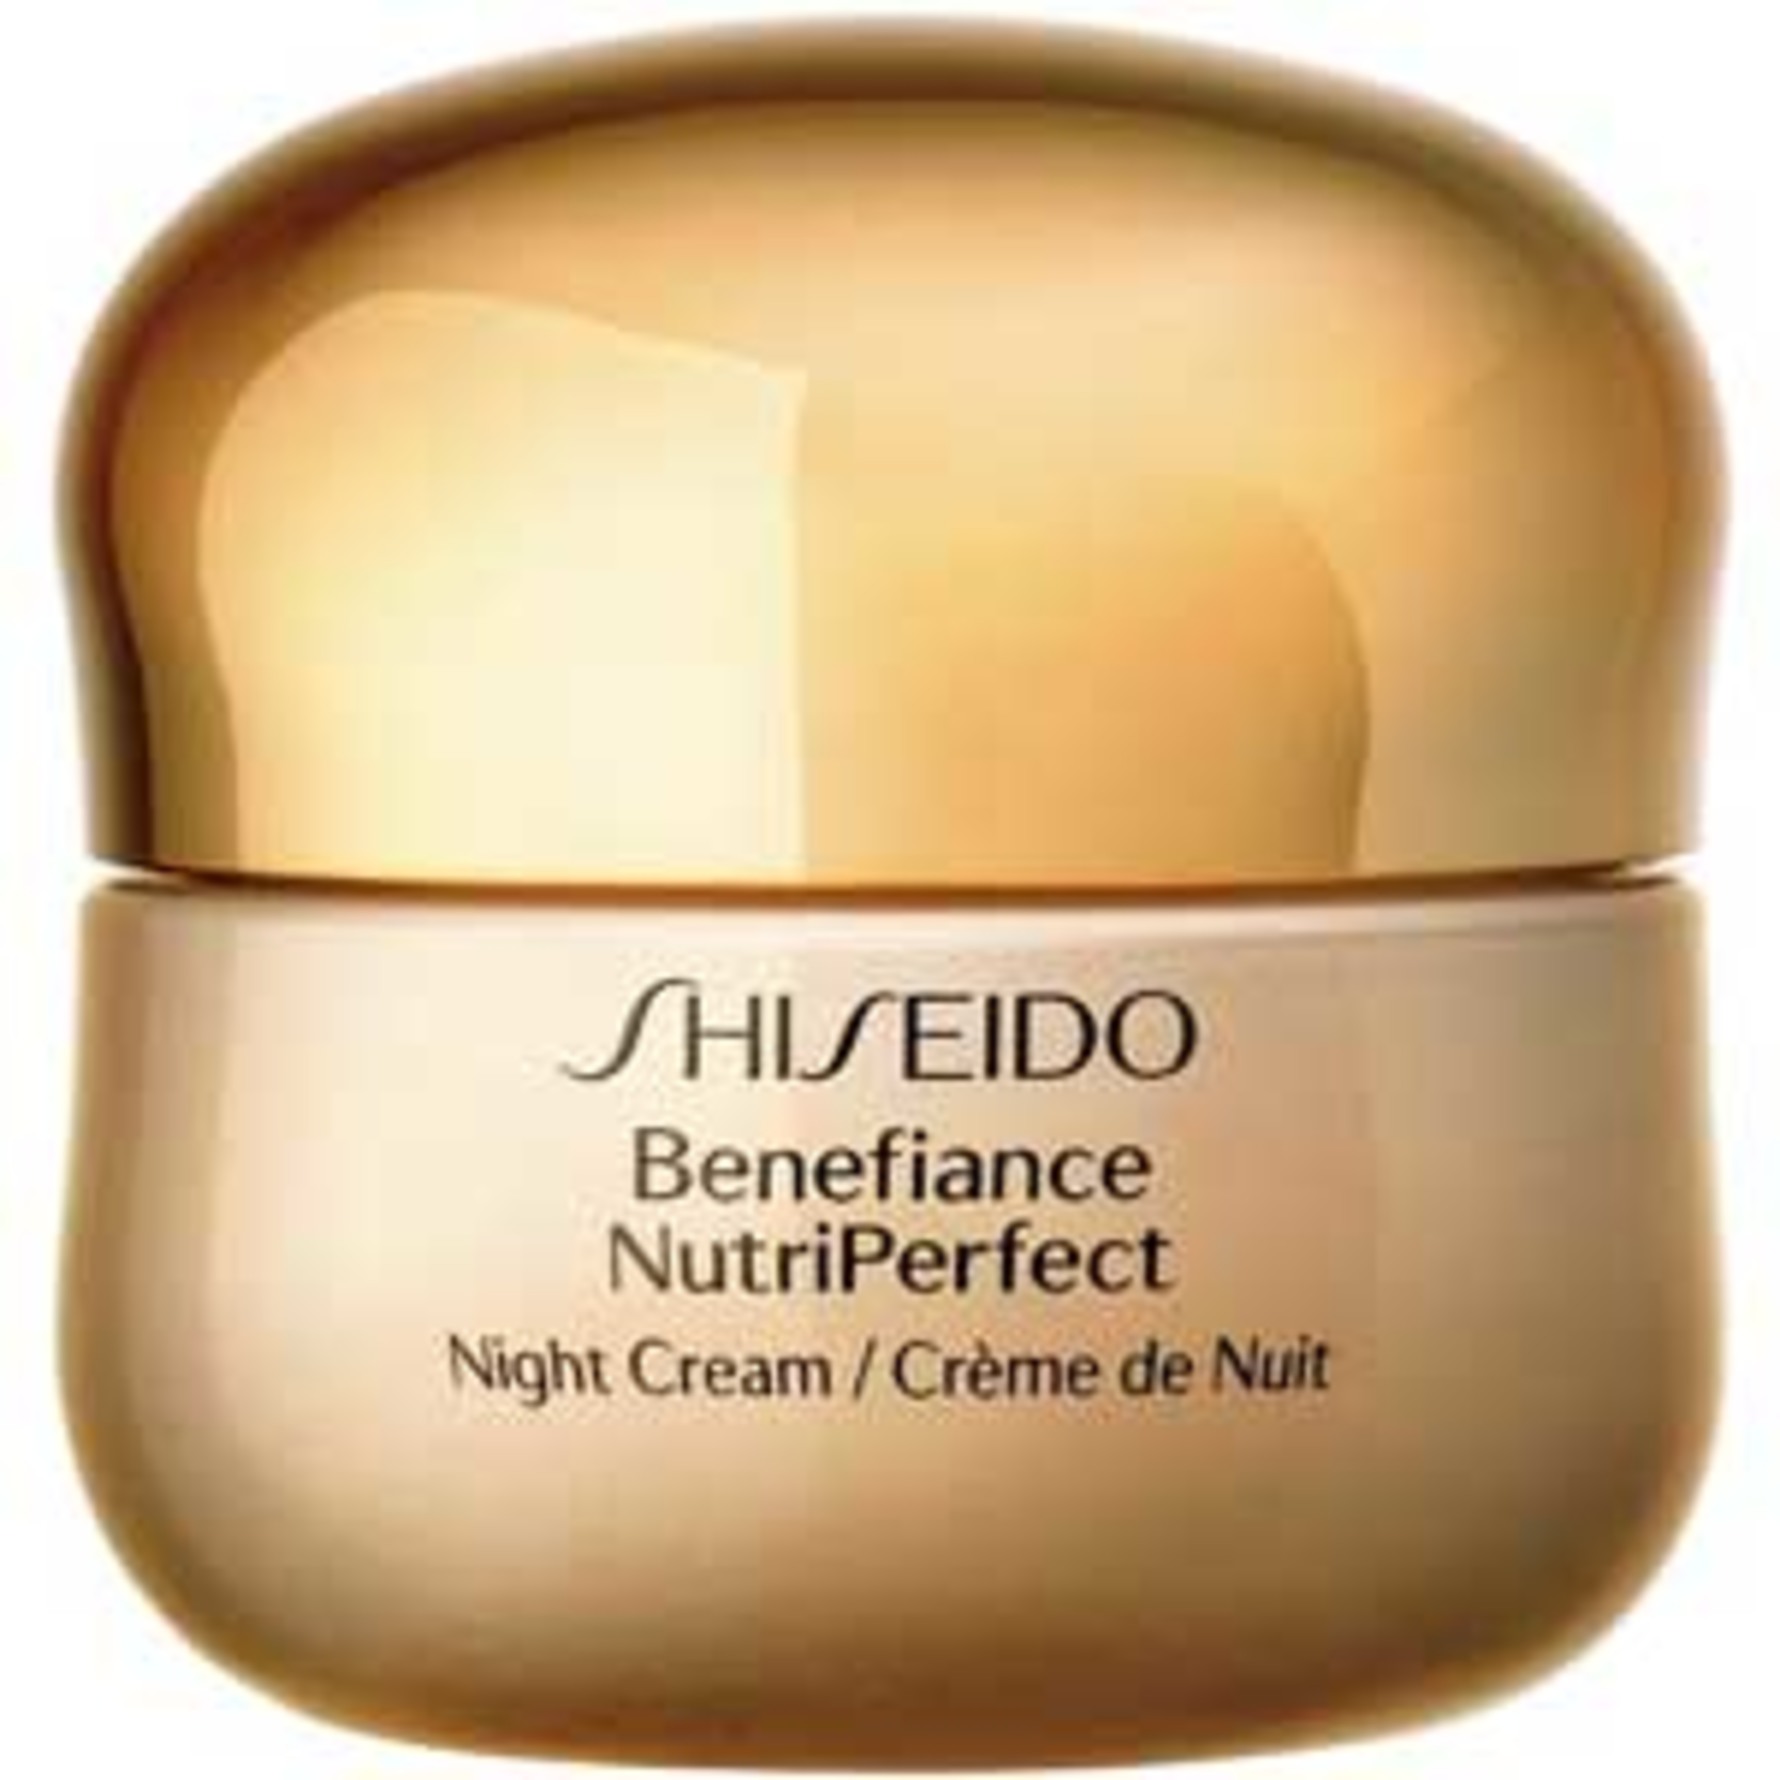 Shiseido средство с эффектом мгновенного выравнивания тона и текстуры кожи ibuki